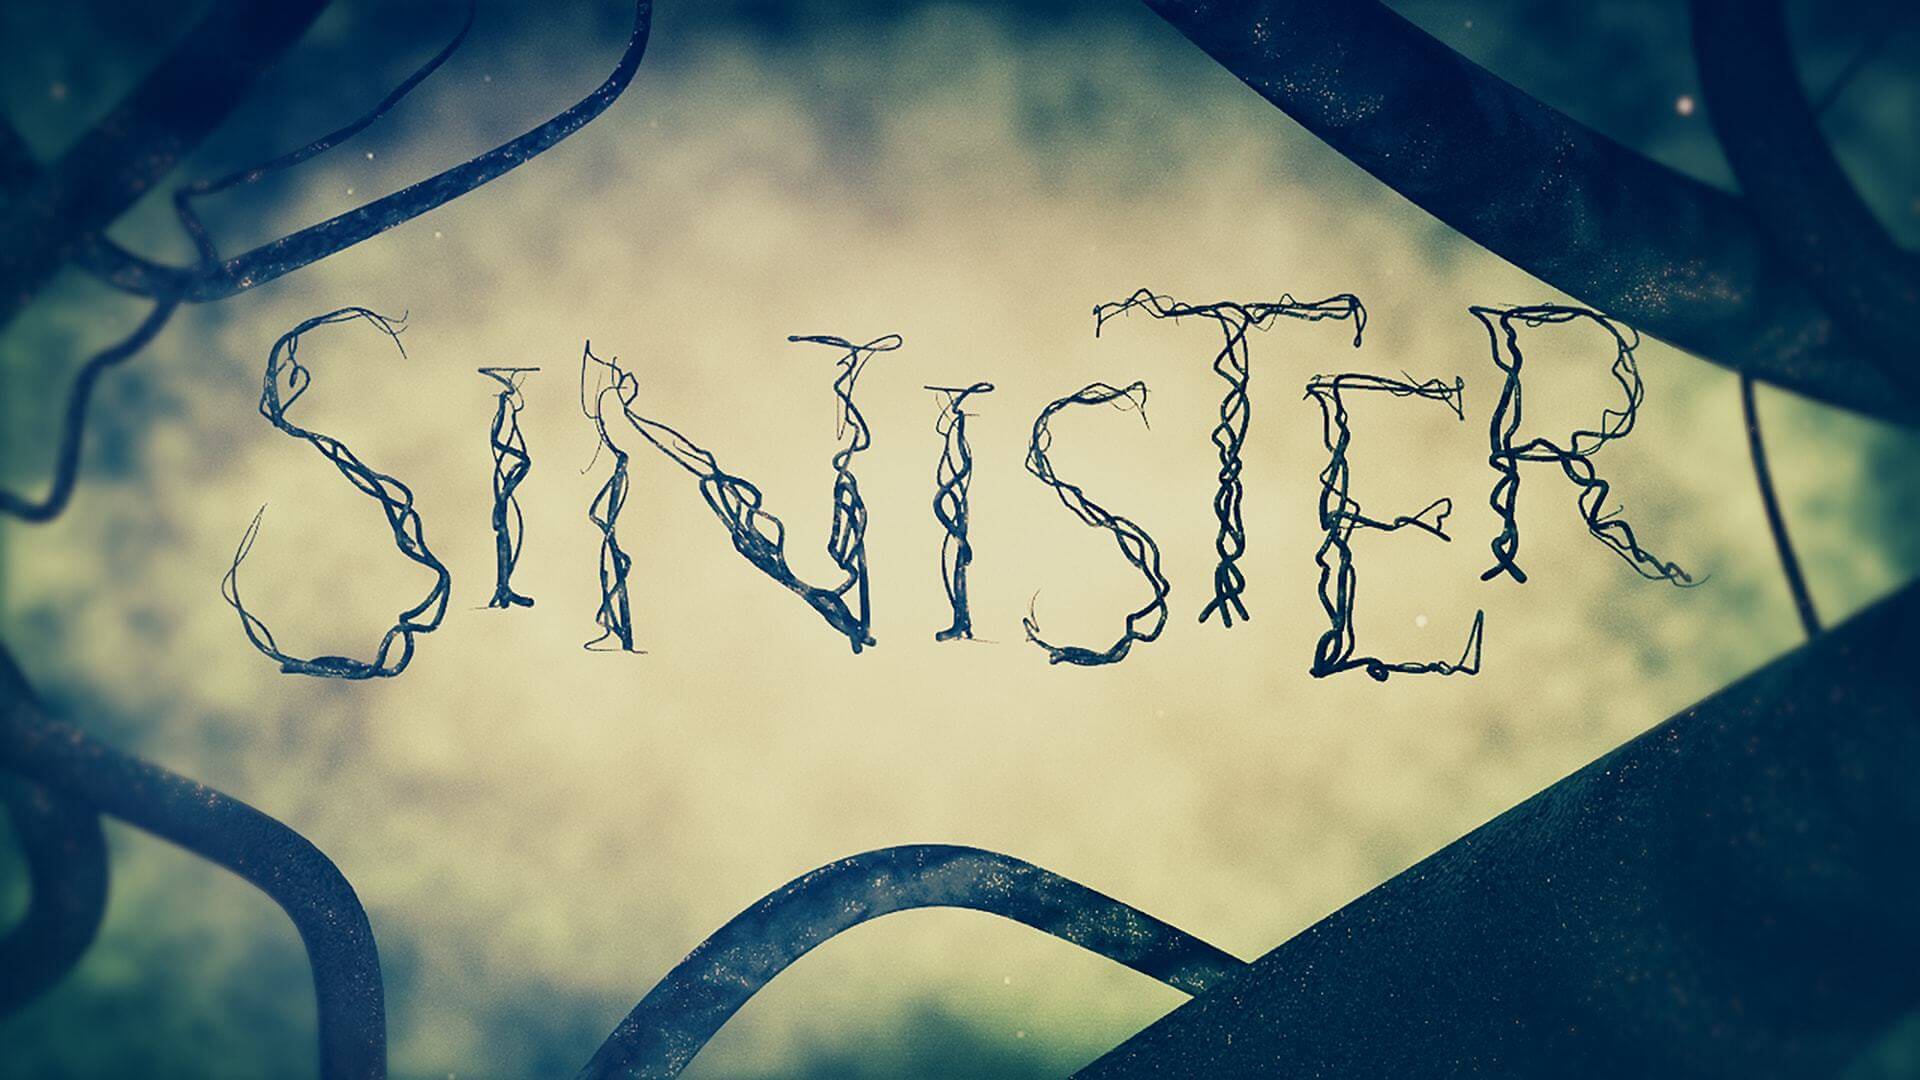 sinister-1920x1080-8.jpg